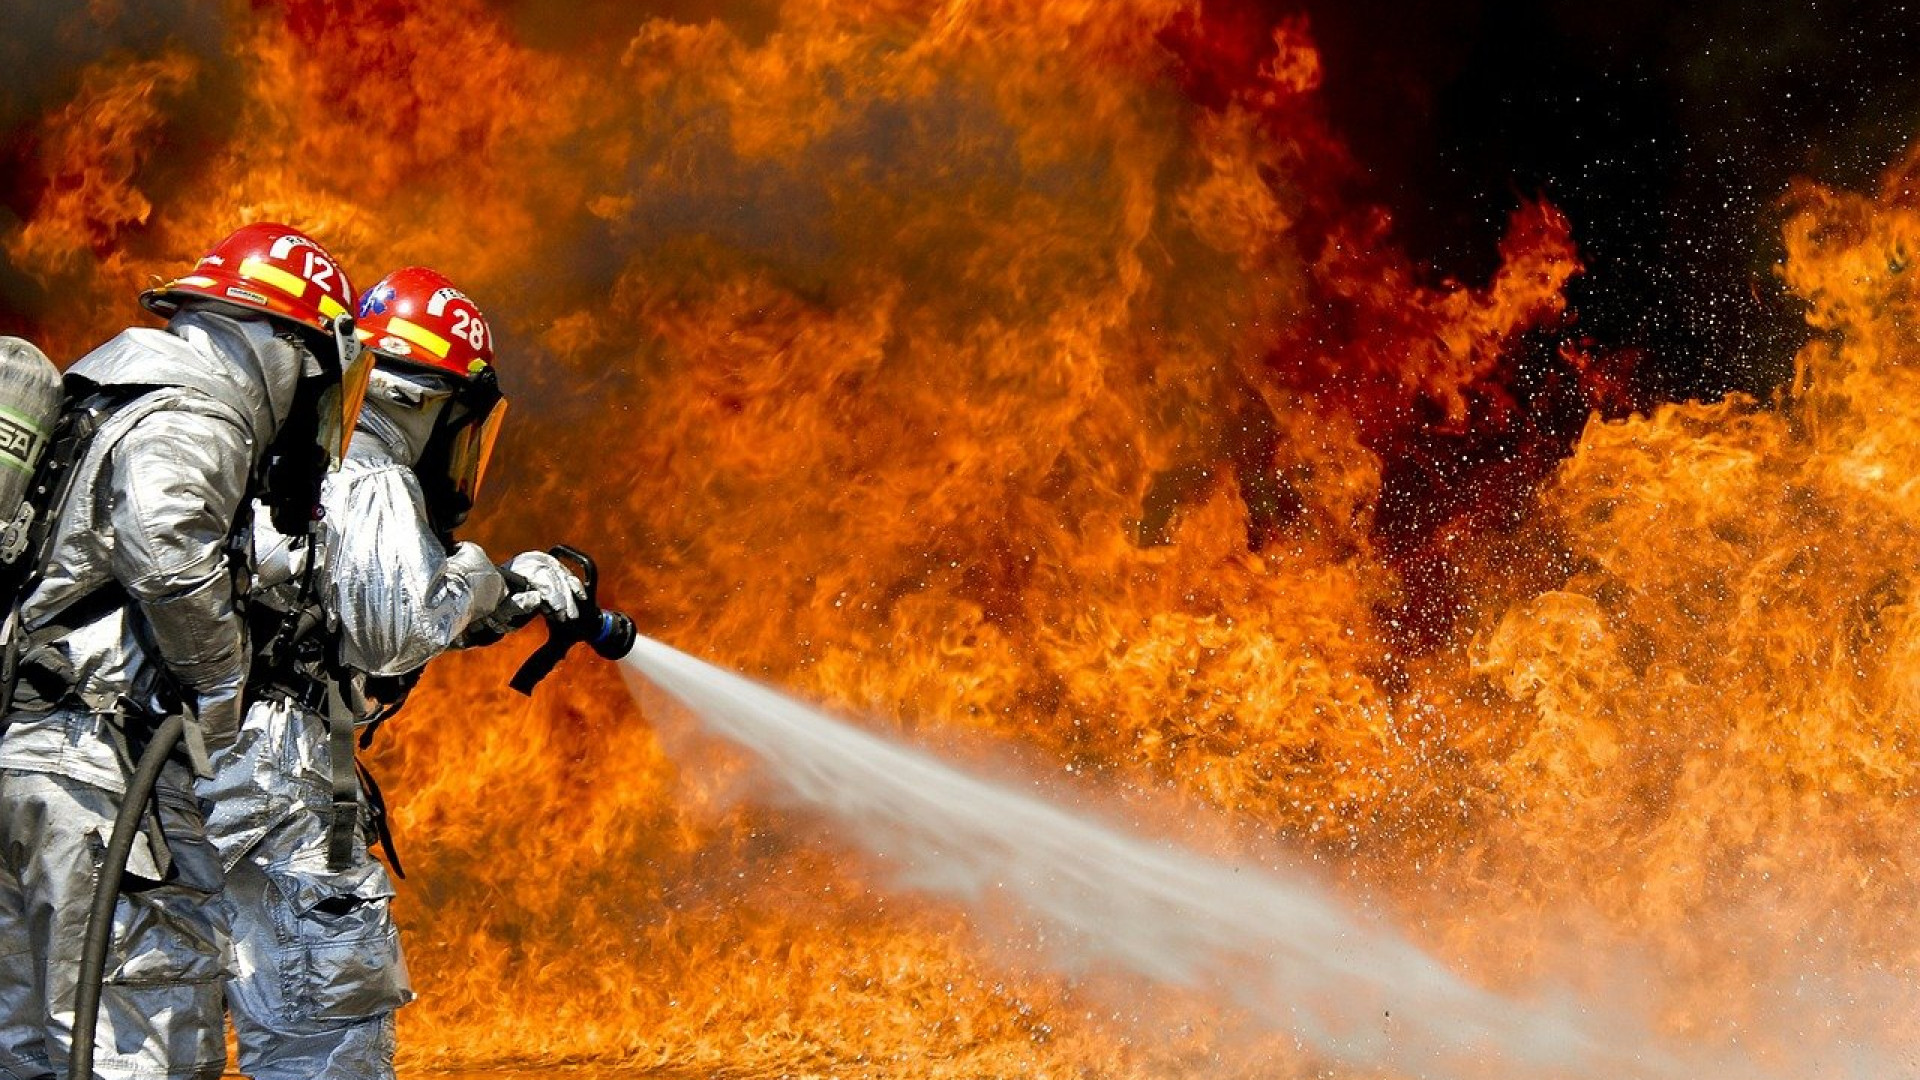 Le matériel incendie essentiel et les obligations des entreprises pour faire face aux risques